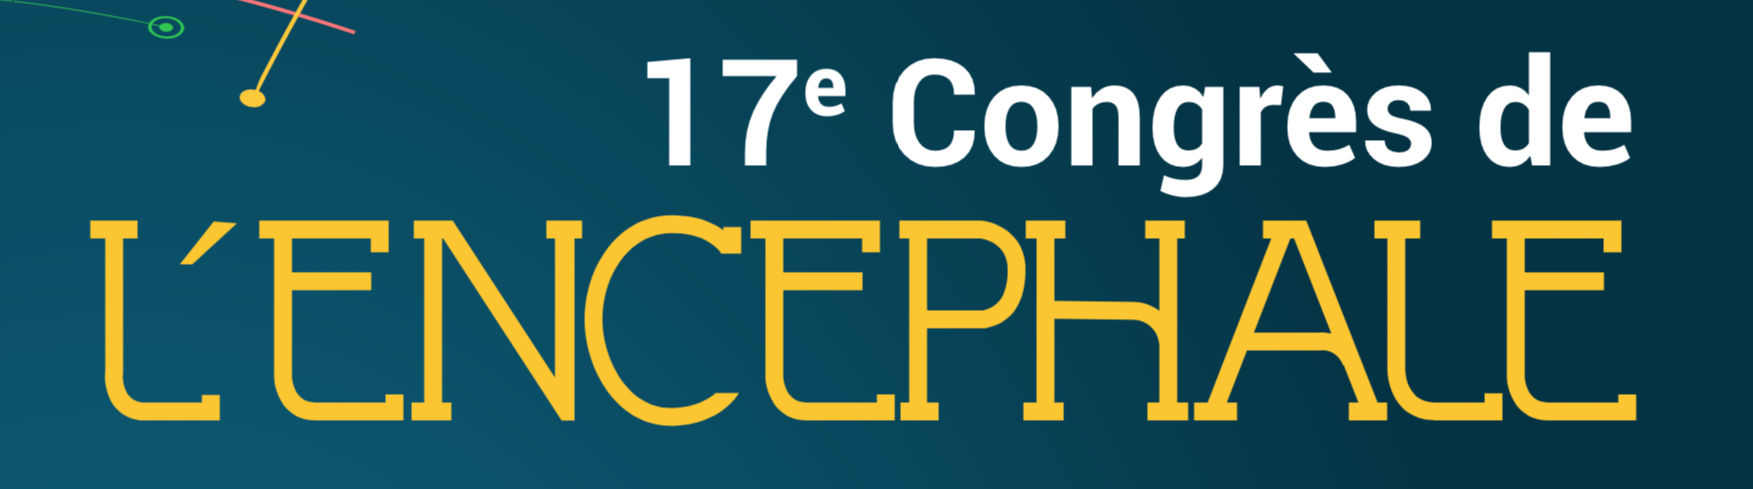 17th Congress of the Encephalon 2019